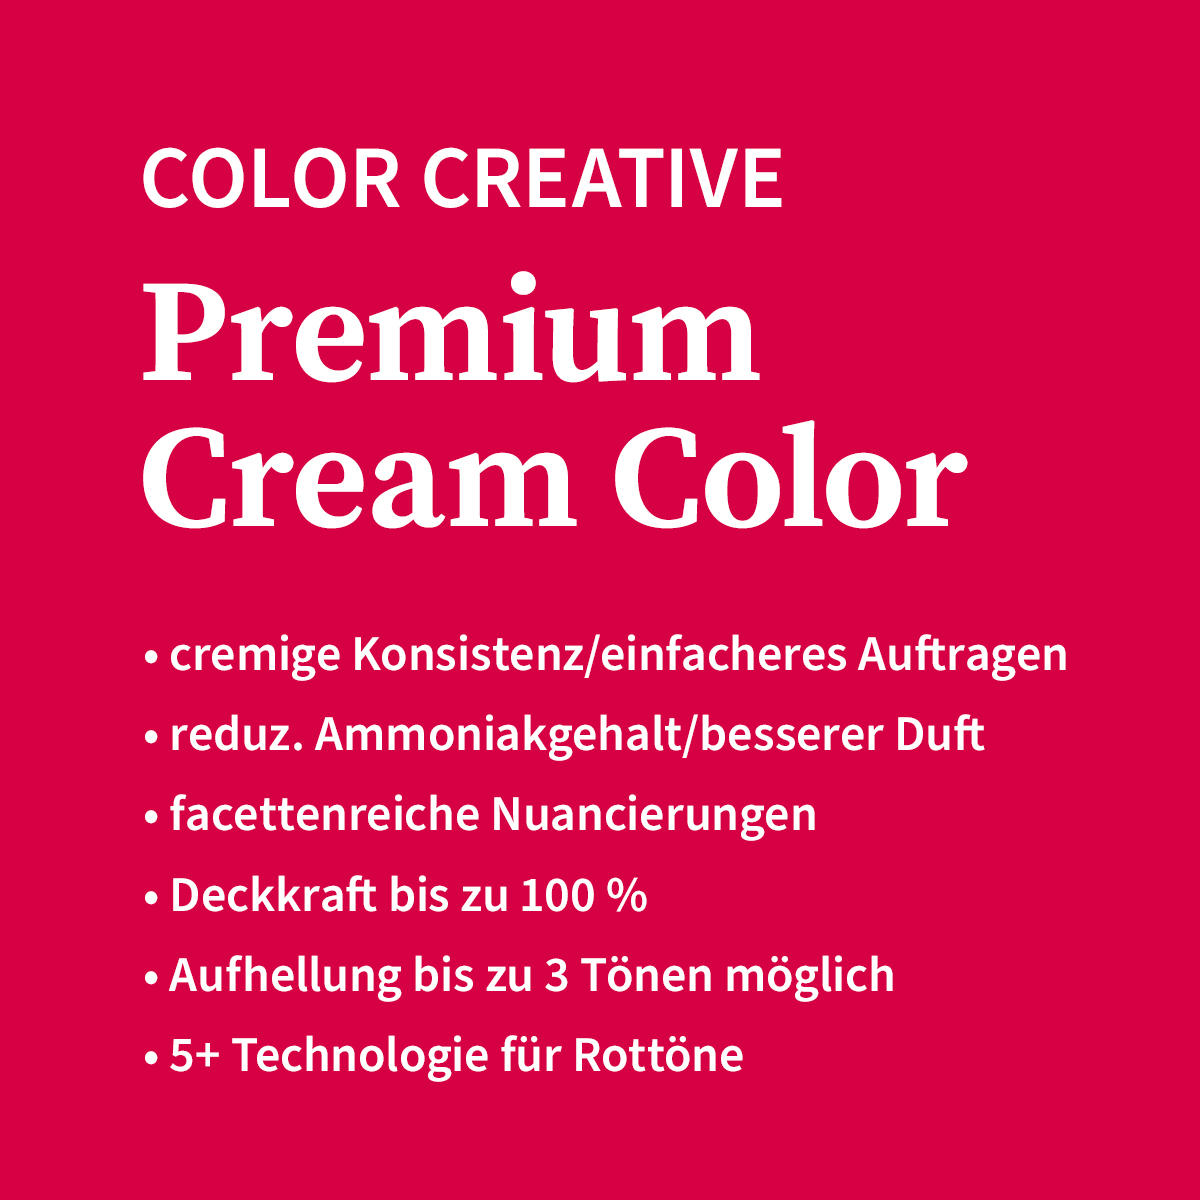 Basler Color Creative Premium Cream Color 4/6 mittelbraun violett, Tube 60 ml - 4